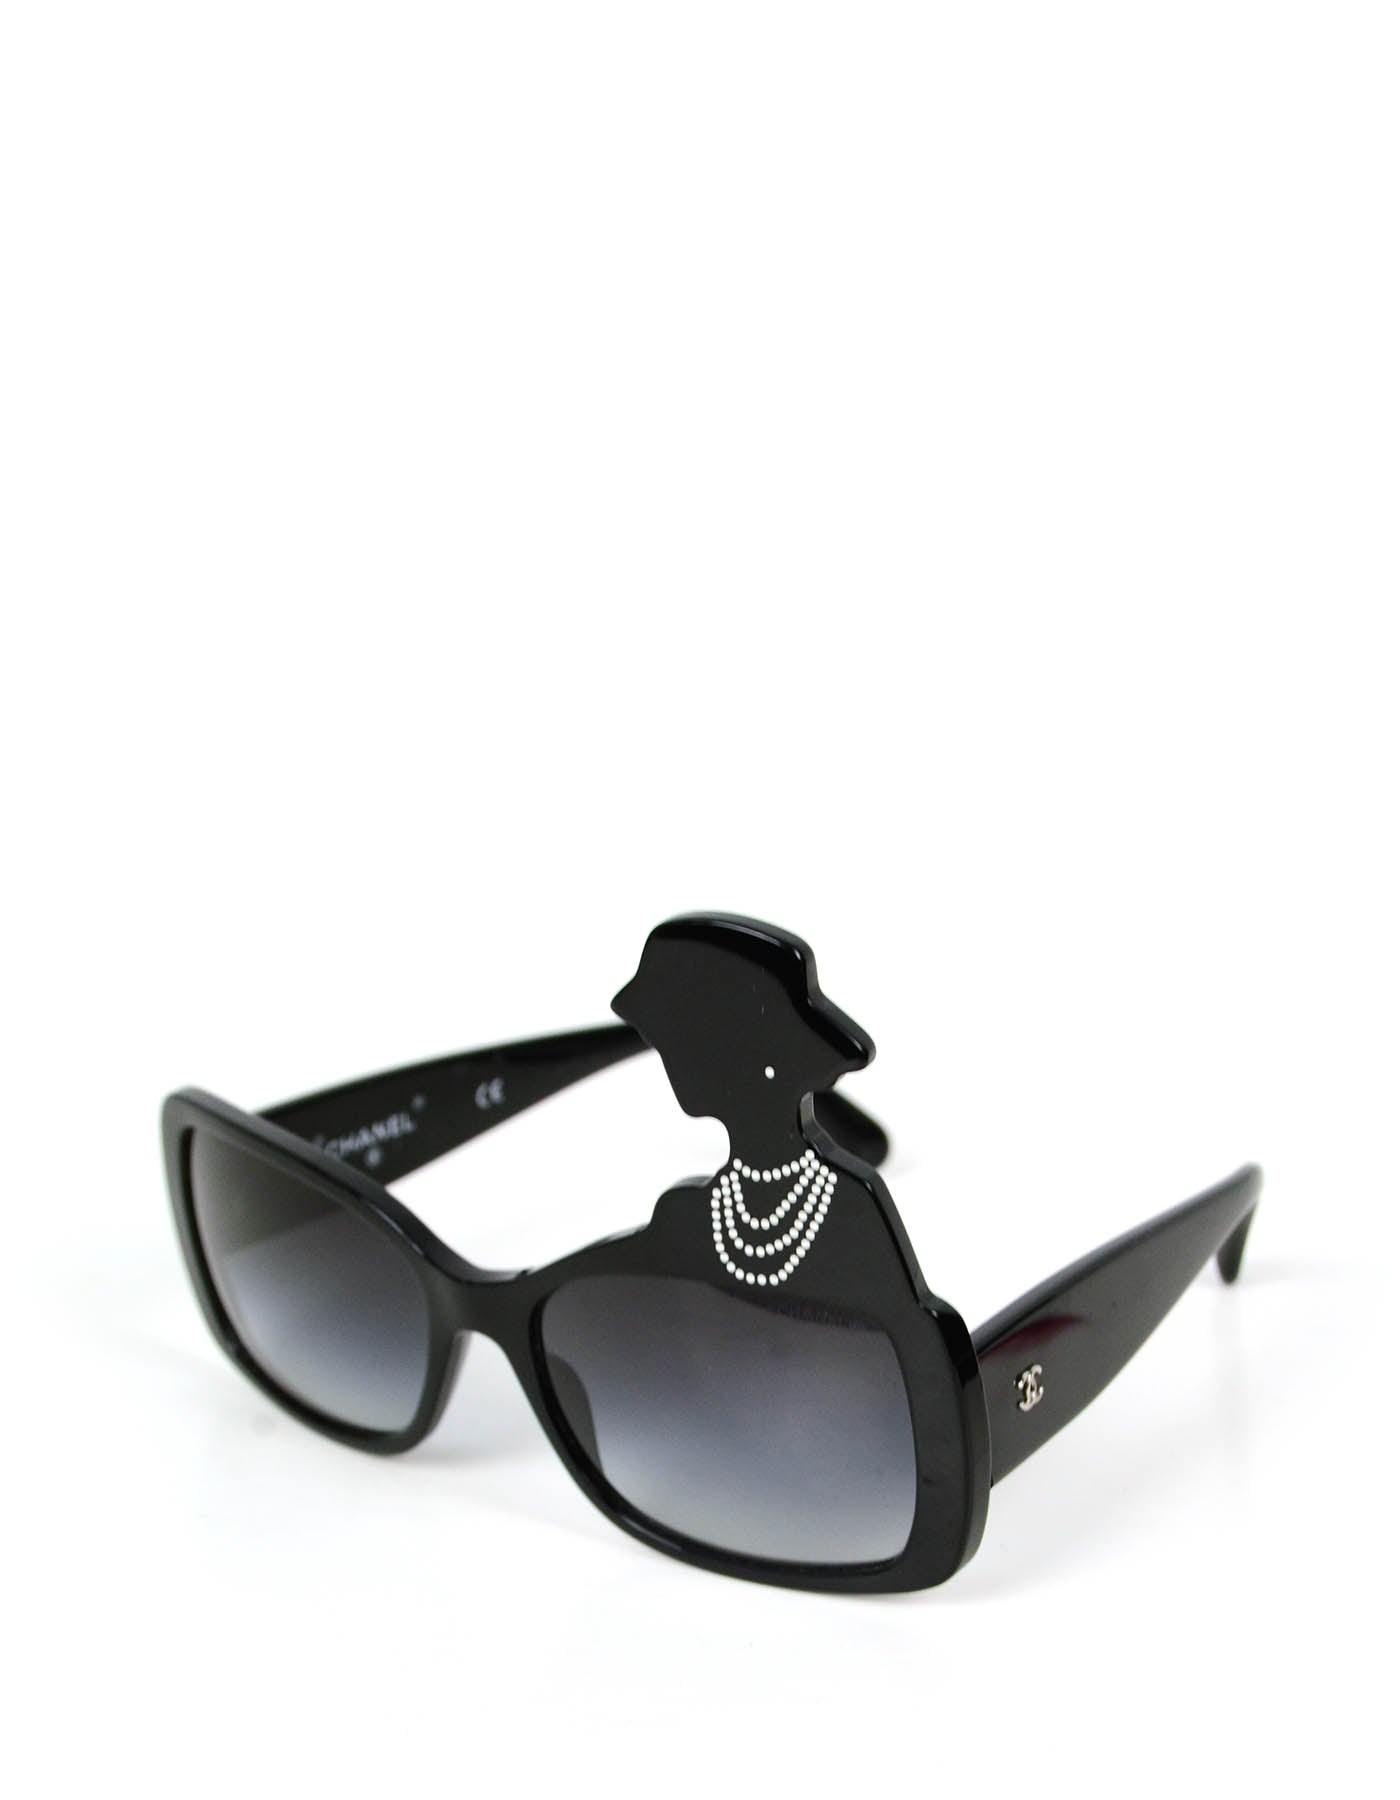 Chanel 2013 Black Acetate Coco Silhouette Sunglasses